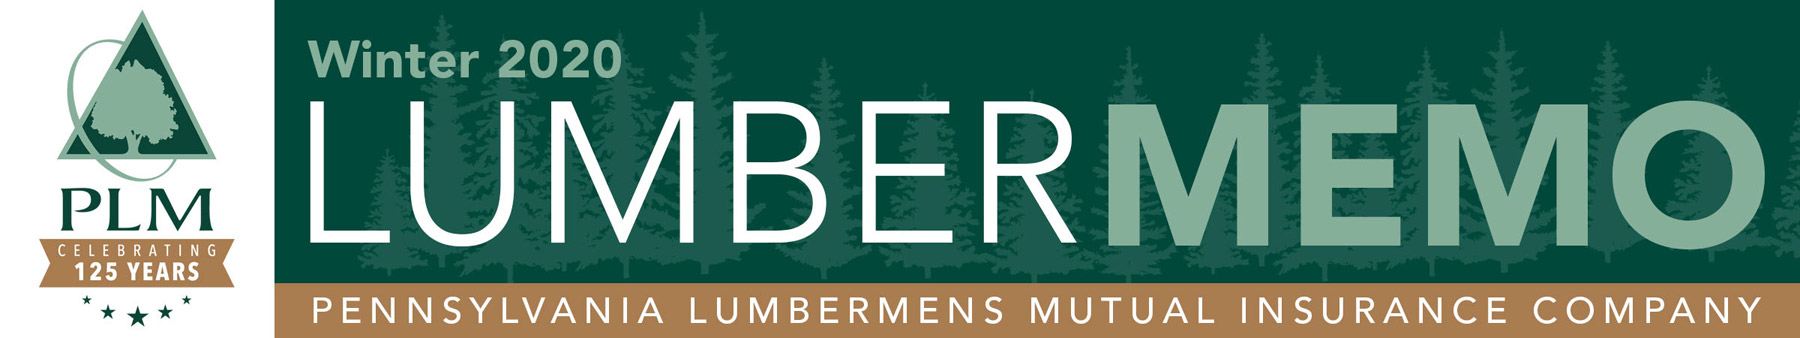 Lumber Memo: Winter 2020